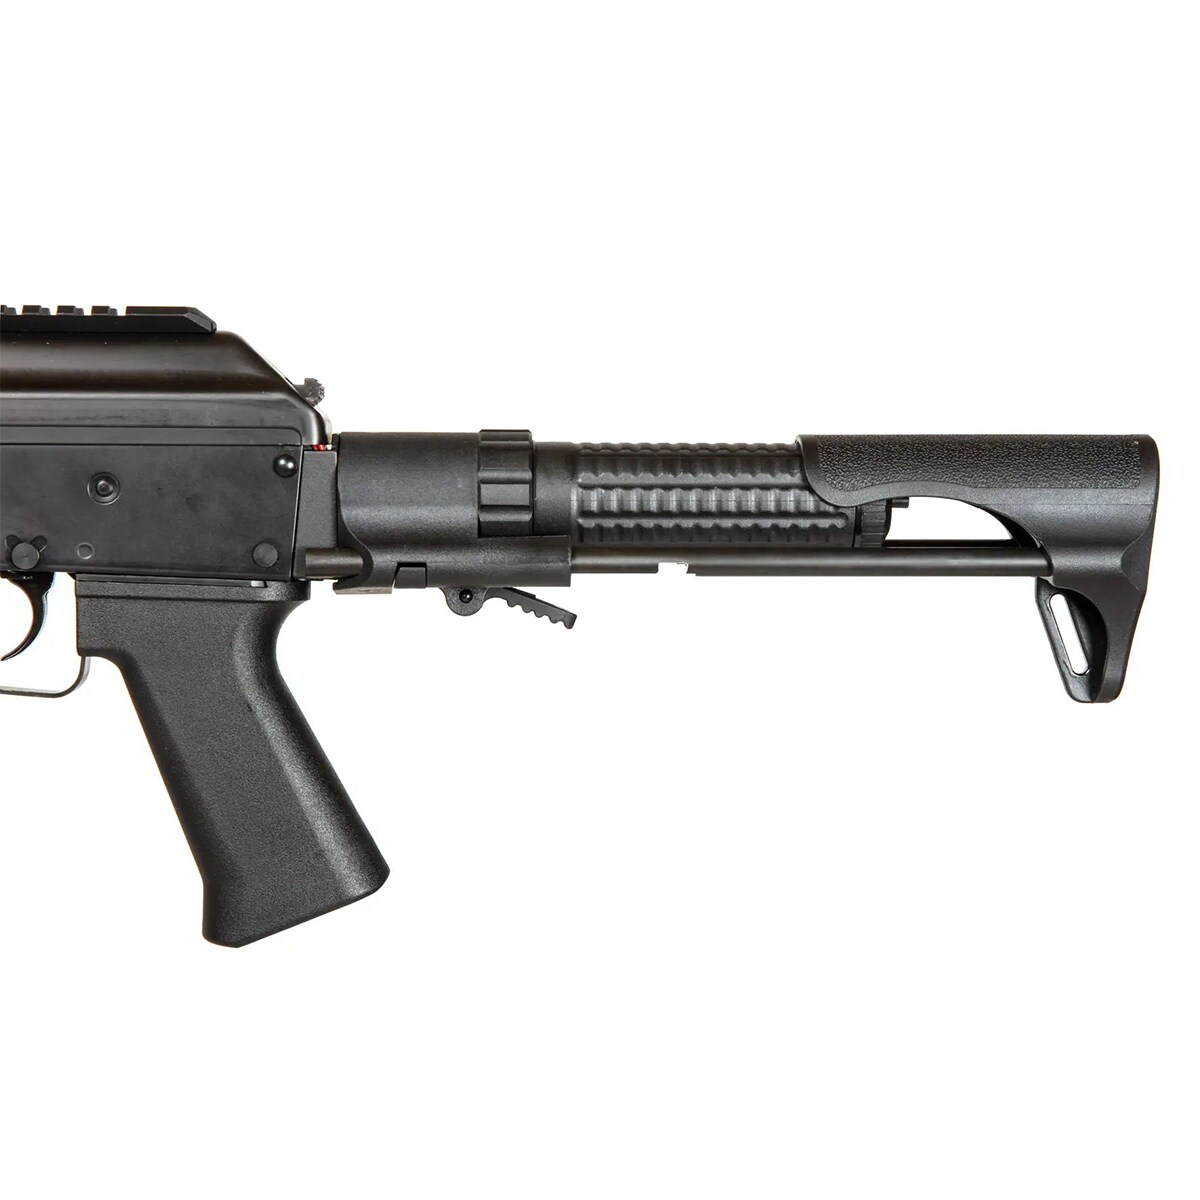 Pistolet maszynowy AEG LCT PP-19-01 Witaź PDW - Black